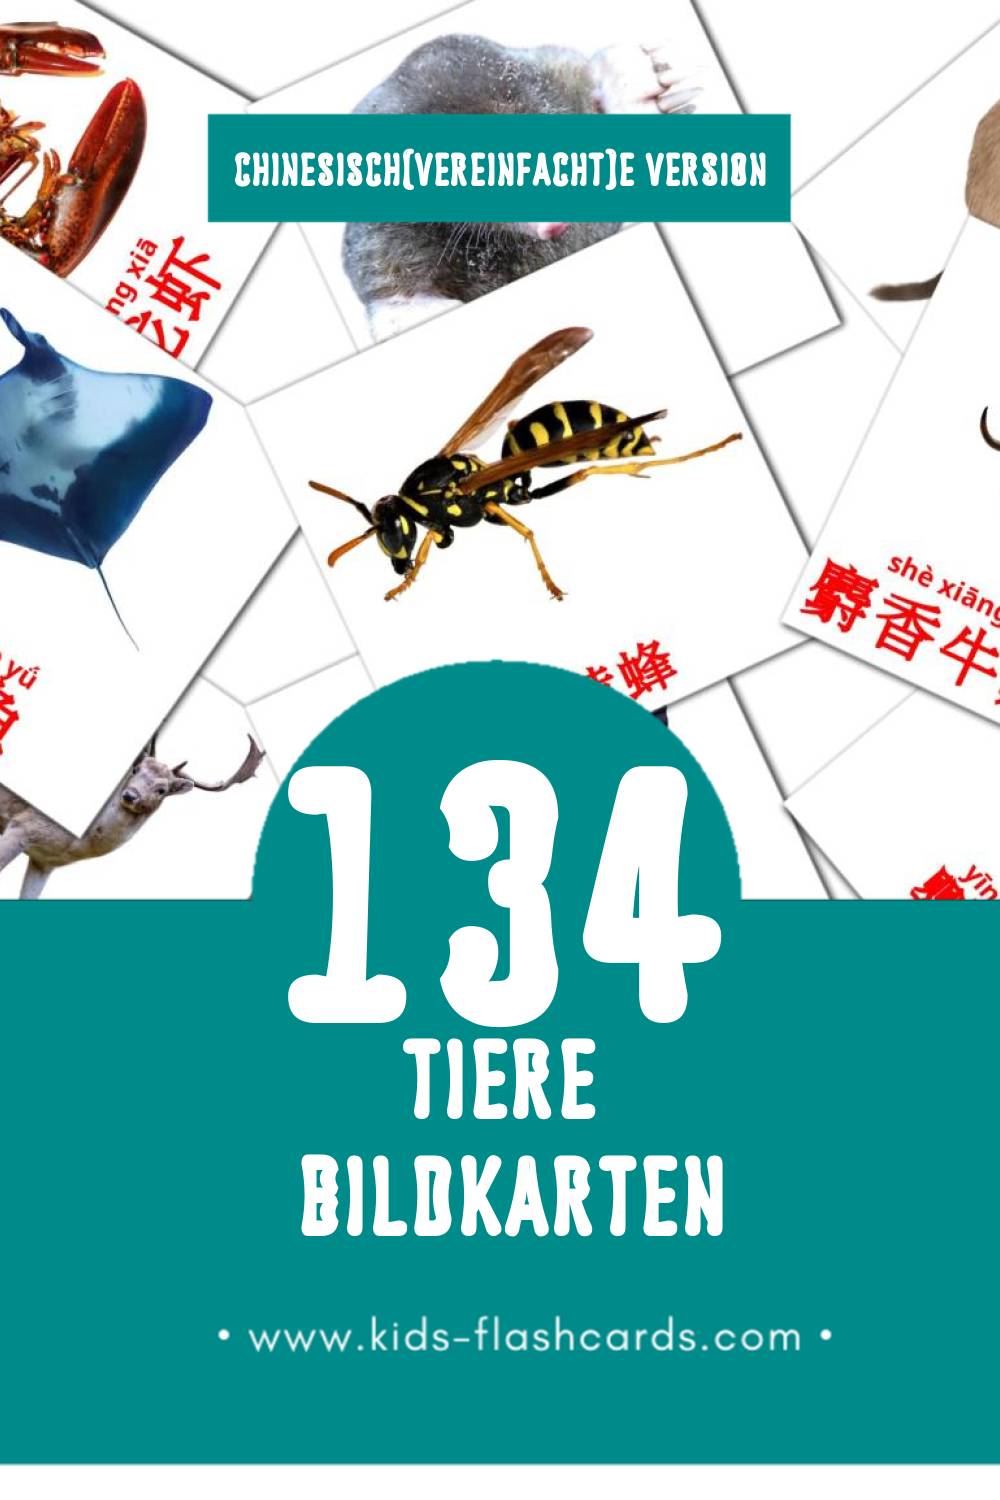 Visual 动物 Flashcards für Kleinkinder (134 Karten in Chinesisch(Vereinfacht))